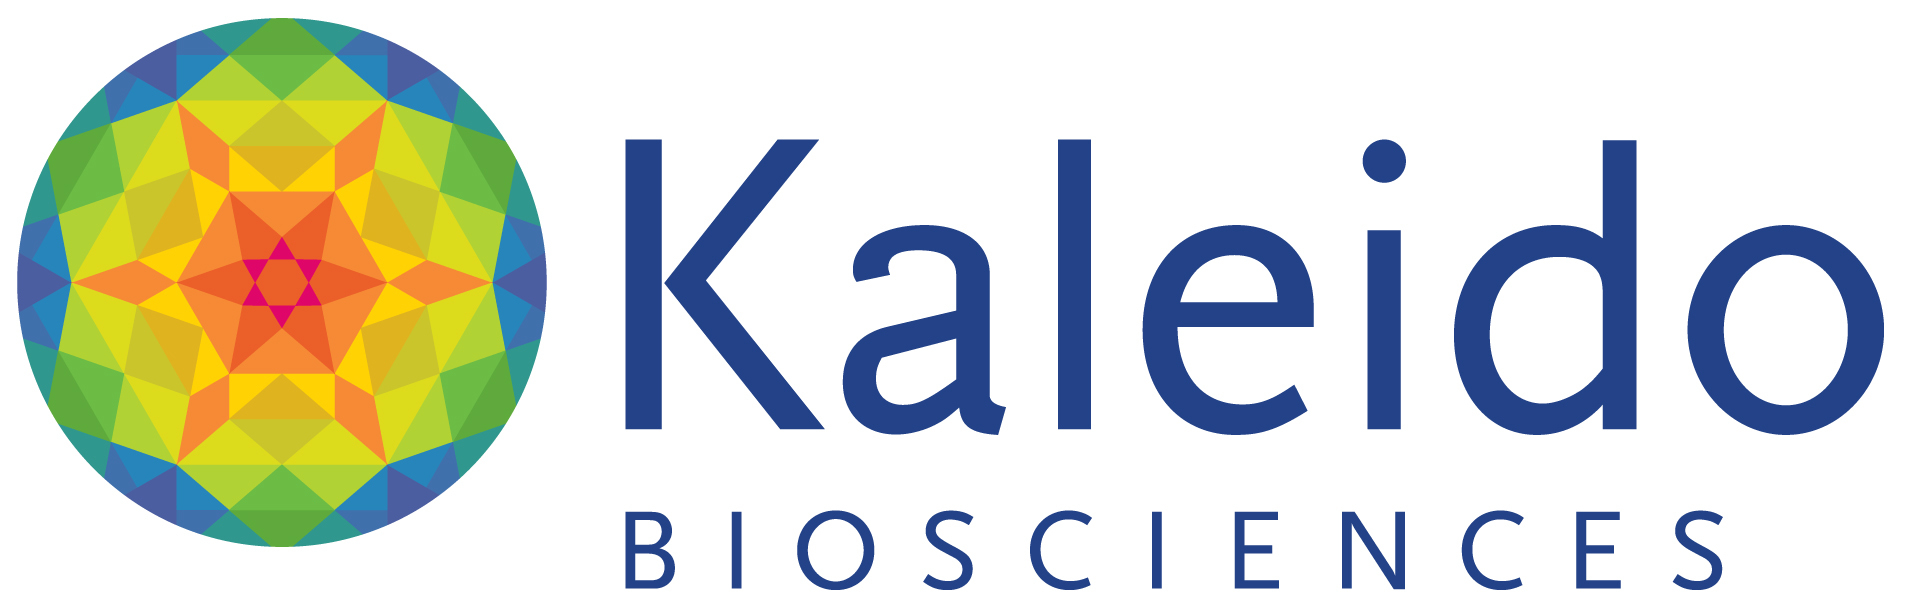 Image result for kaleido biosciences logo